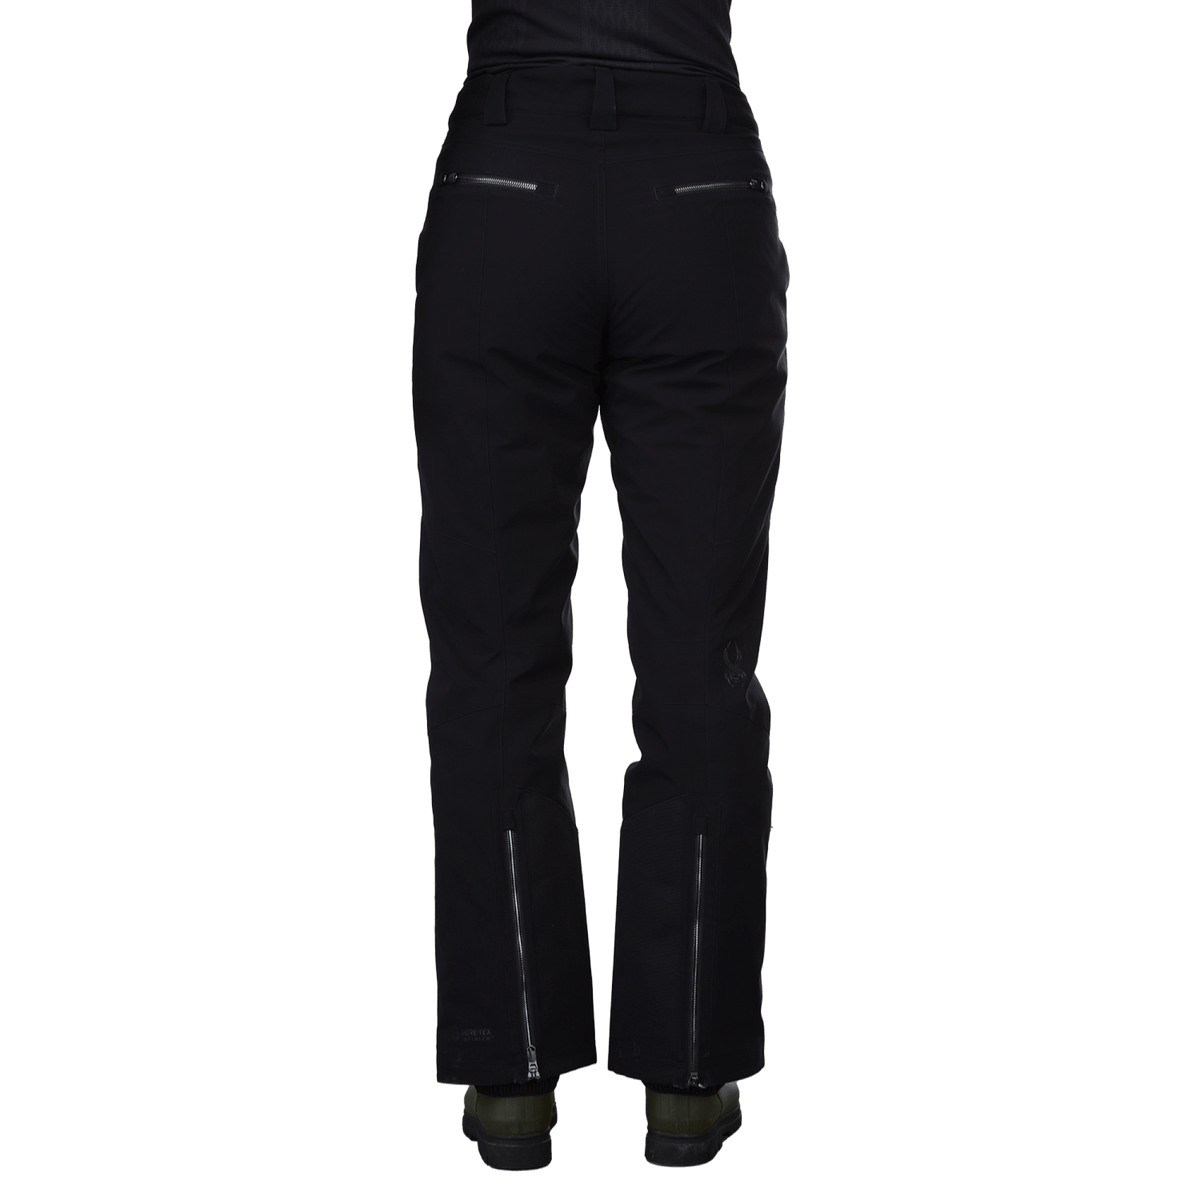 Spyder Winner GTX Womens Pants – Oberson